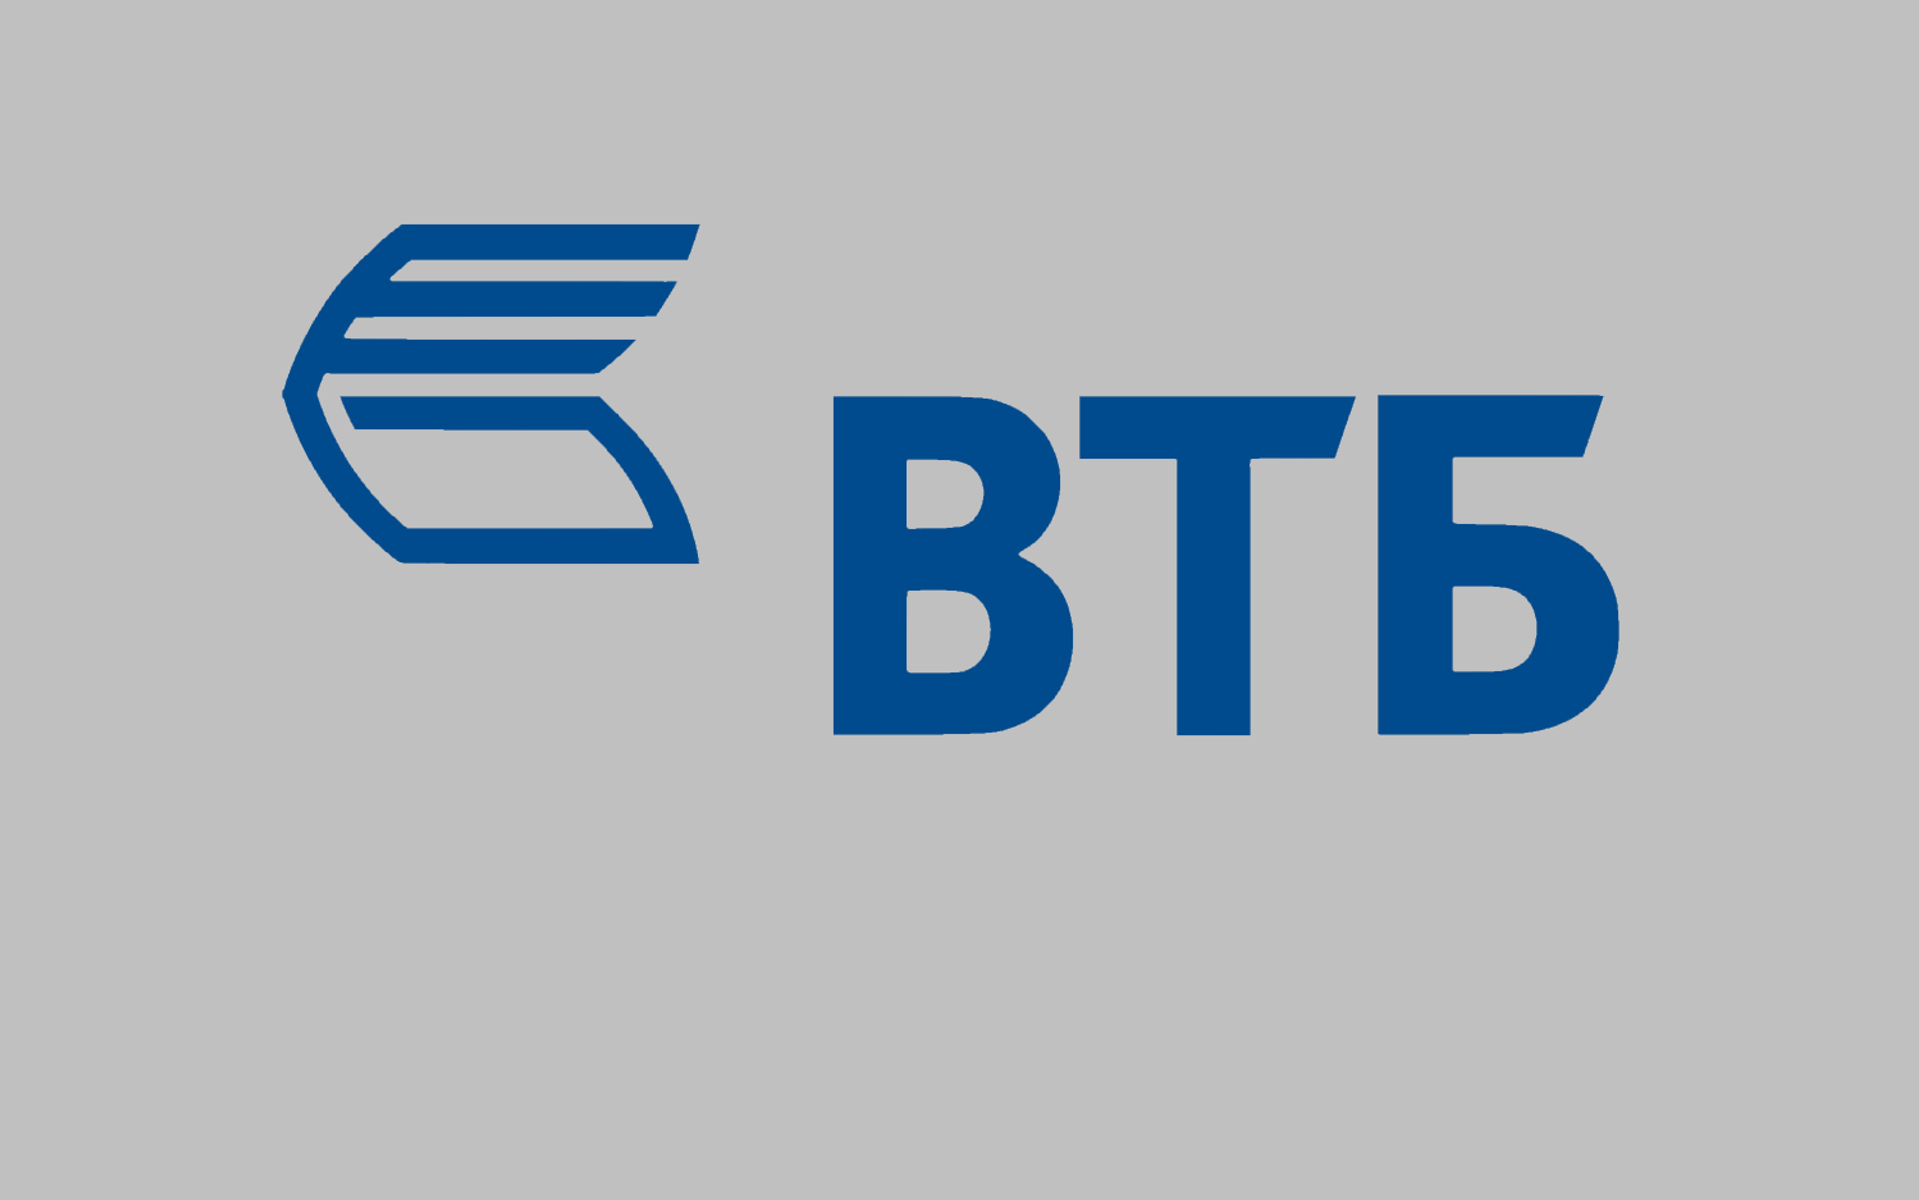 Банк новый логотип. Товарный знак ВТБ. ВТБ логотип новый. ВТБ на прозрачном фоне. ВТБ логотип на прозрачном фоне.